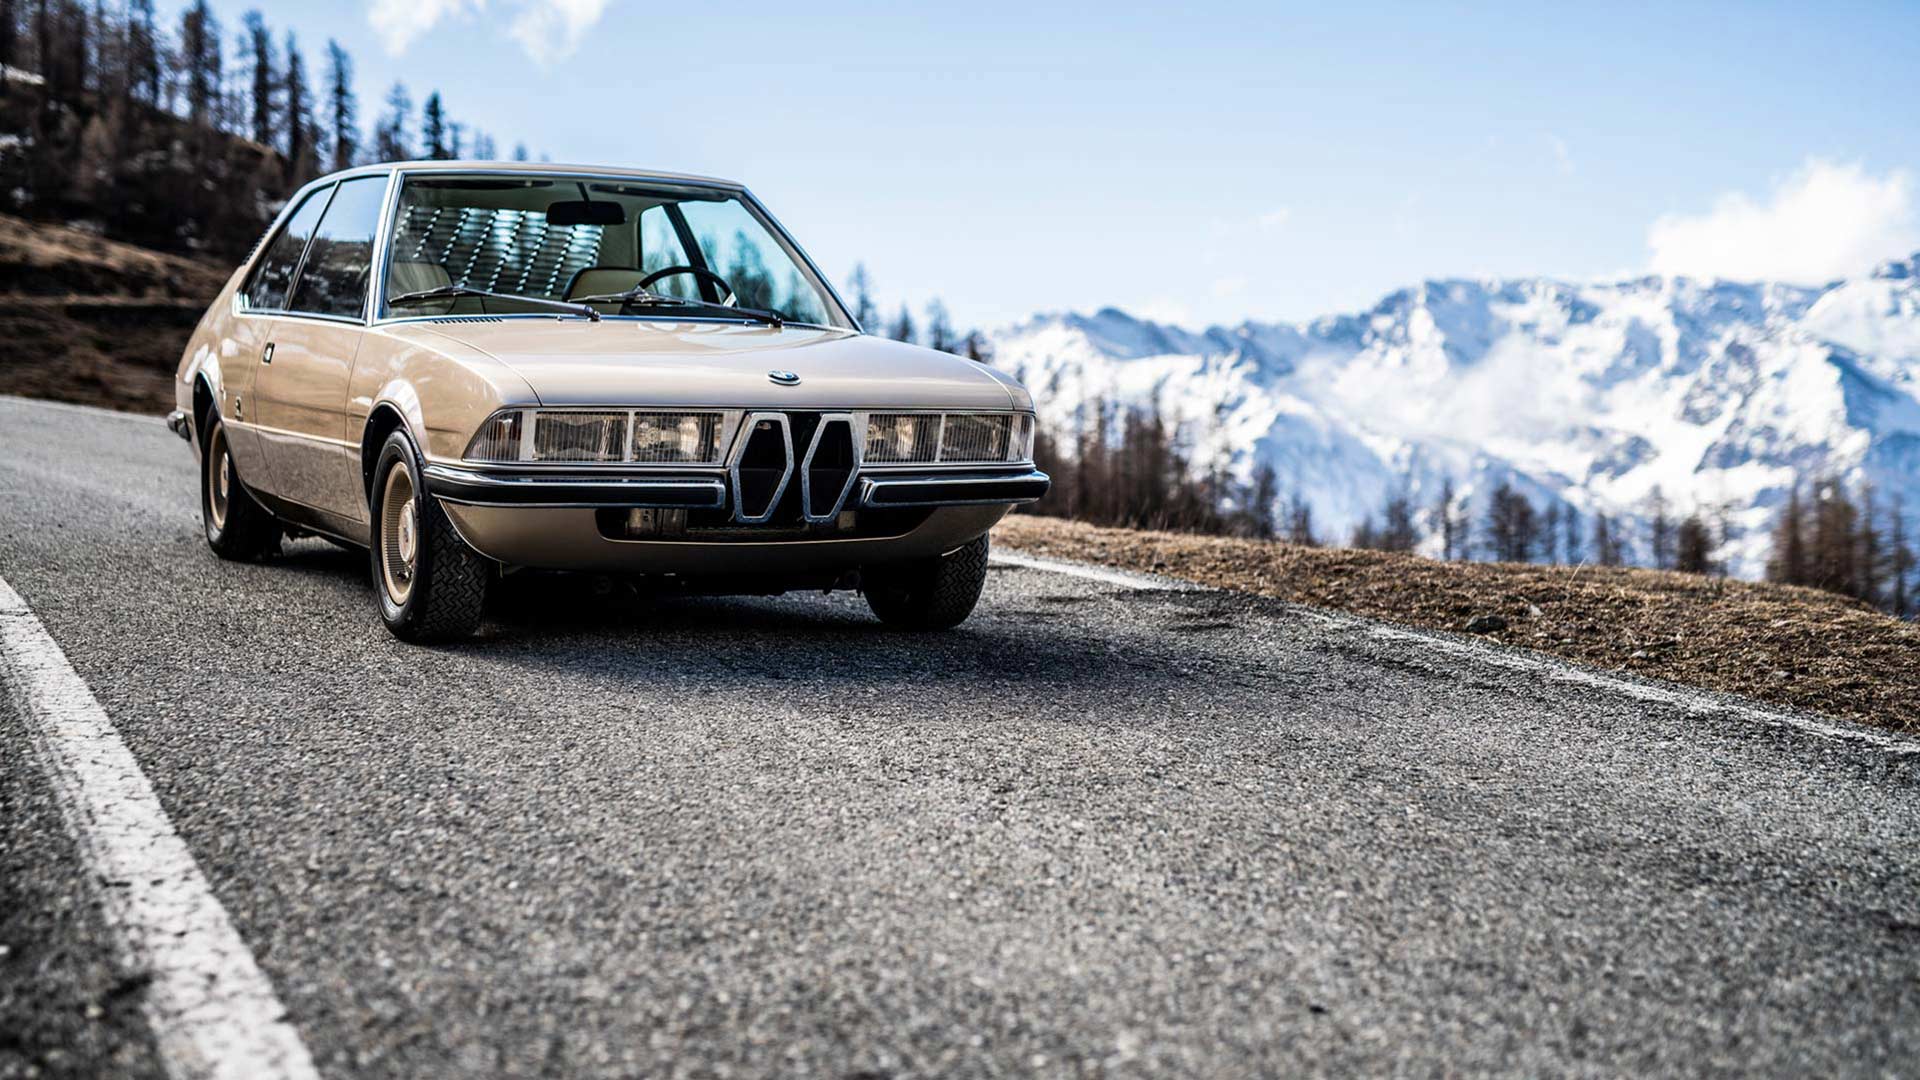 BMW Garmisch concept